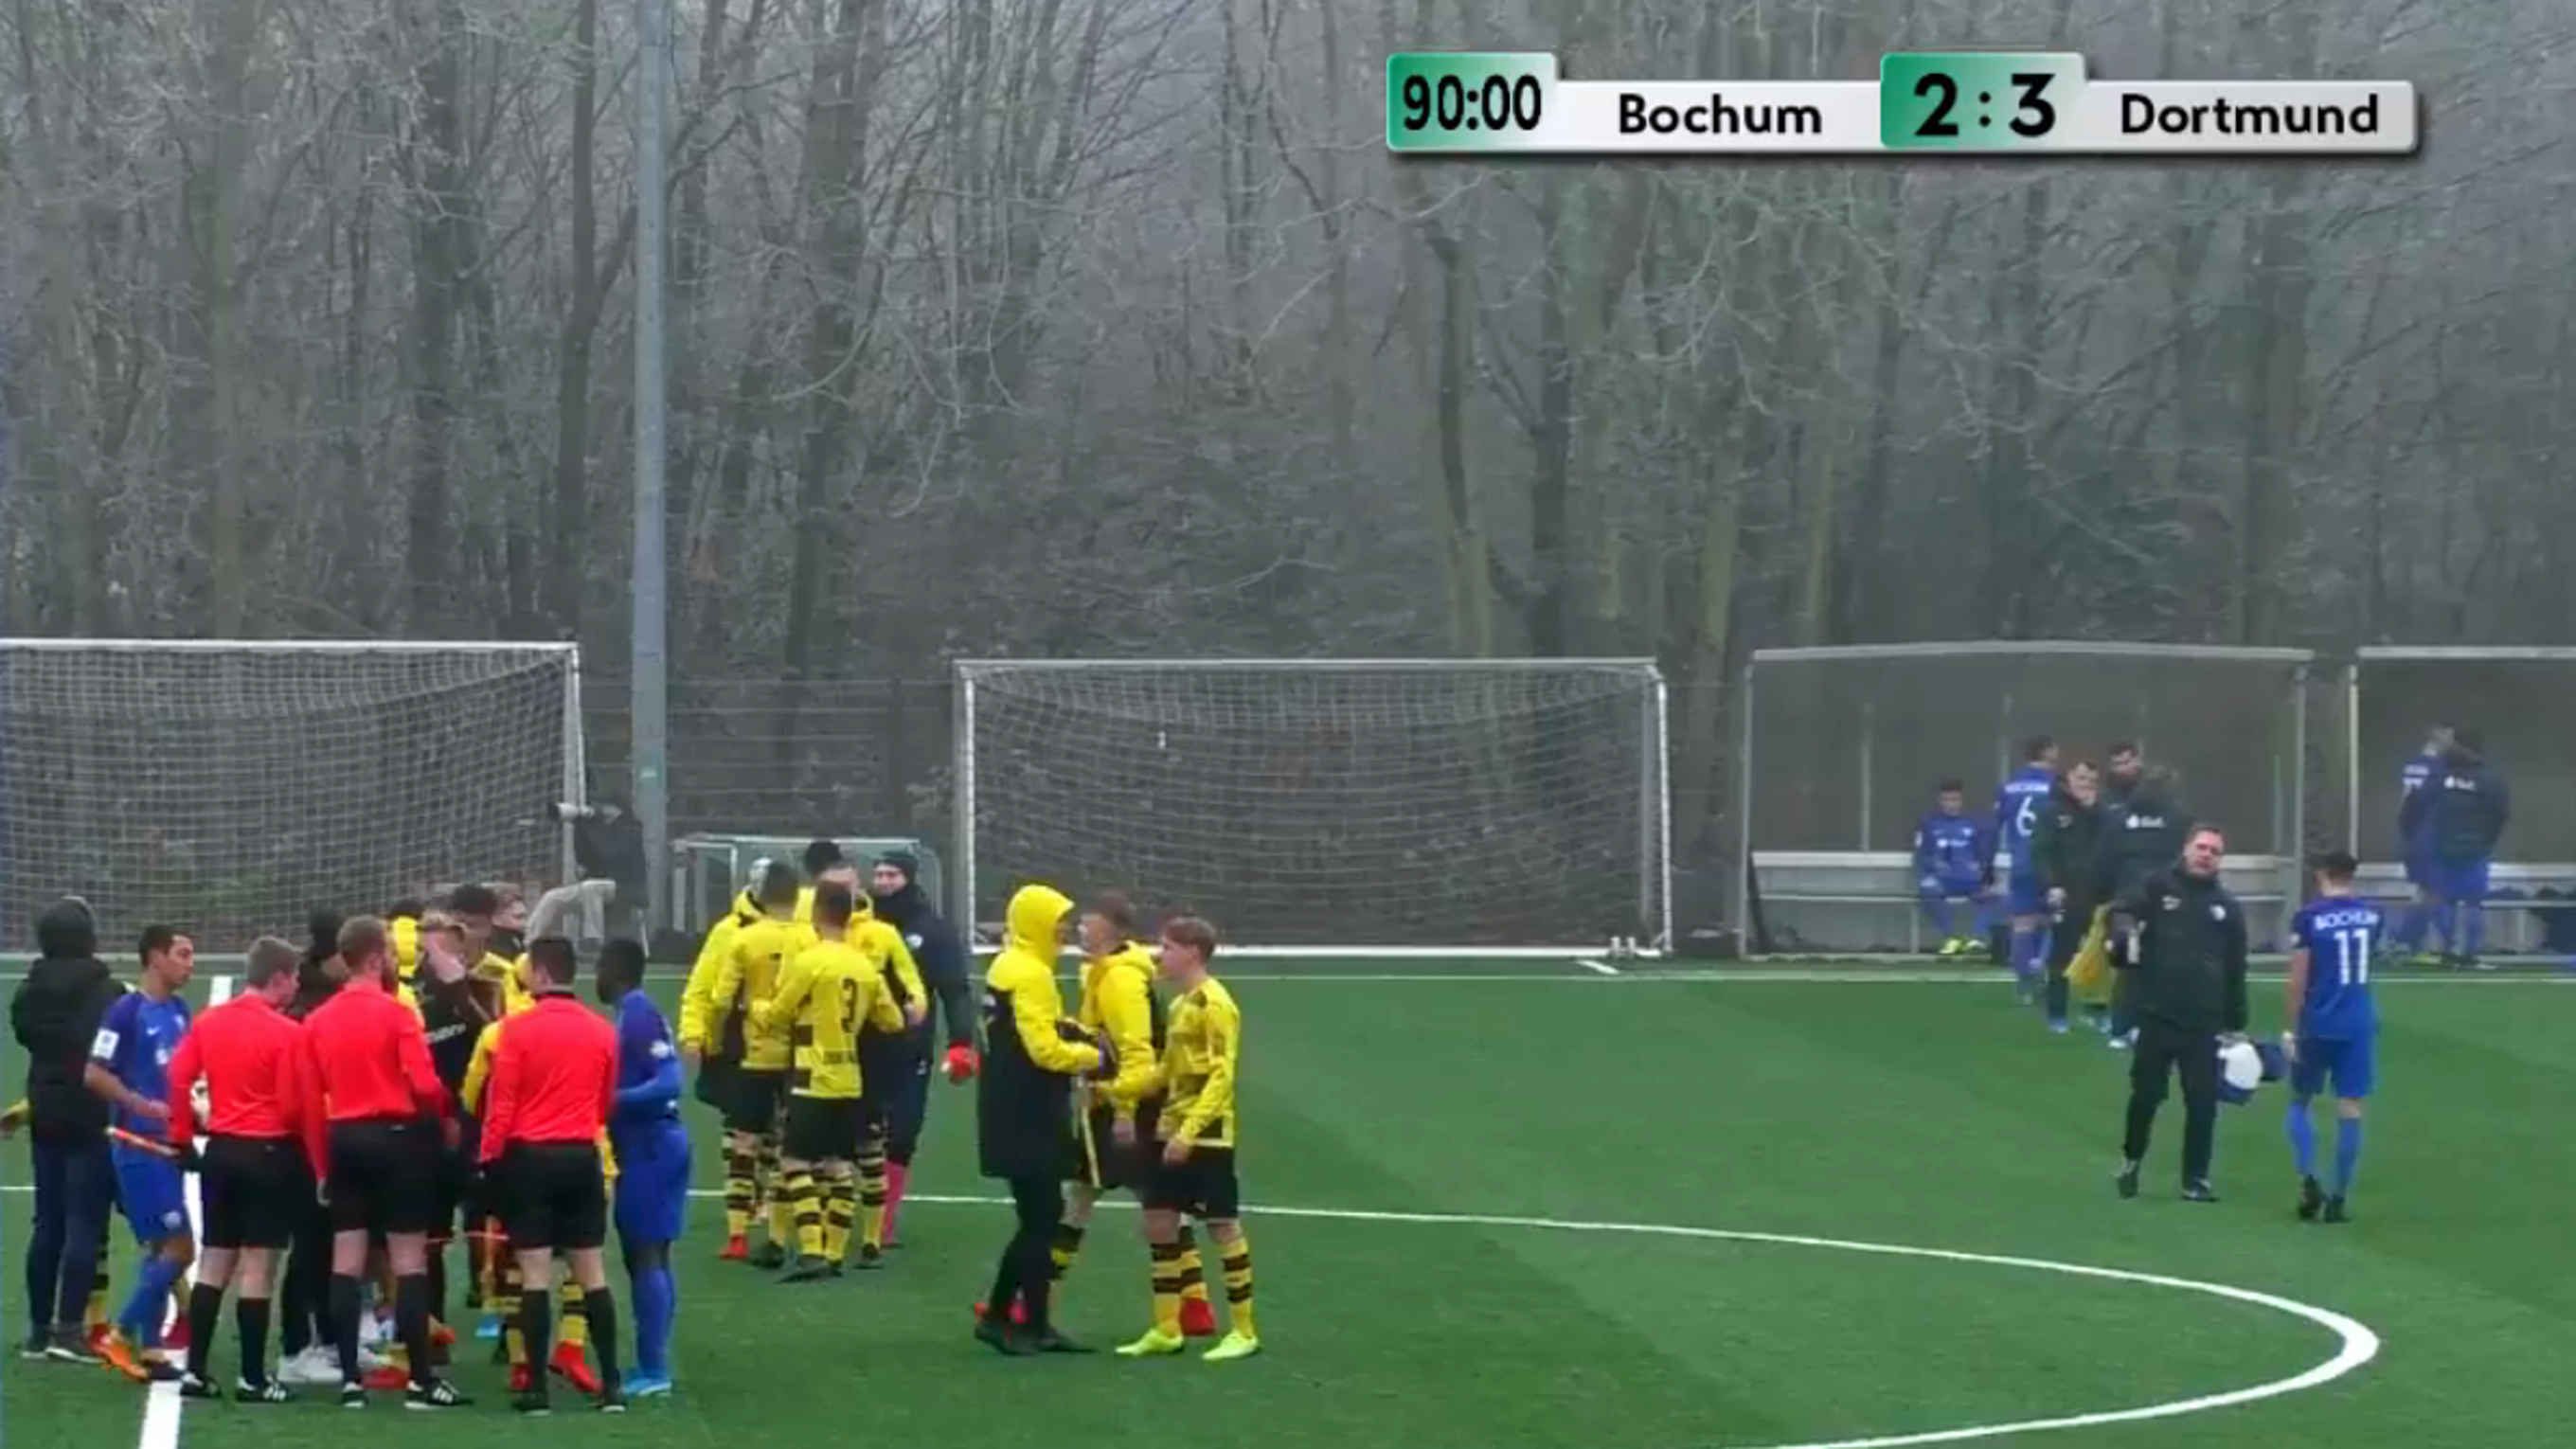 Jubel nach dem Schlusspfiff: Dortmund schlägt Bochum © DFB-TV